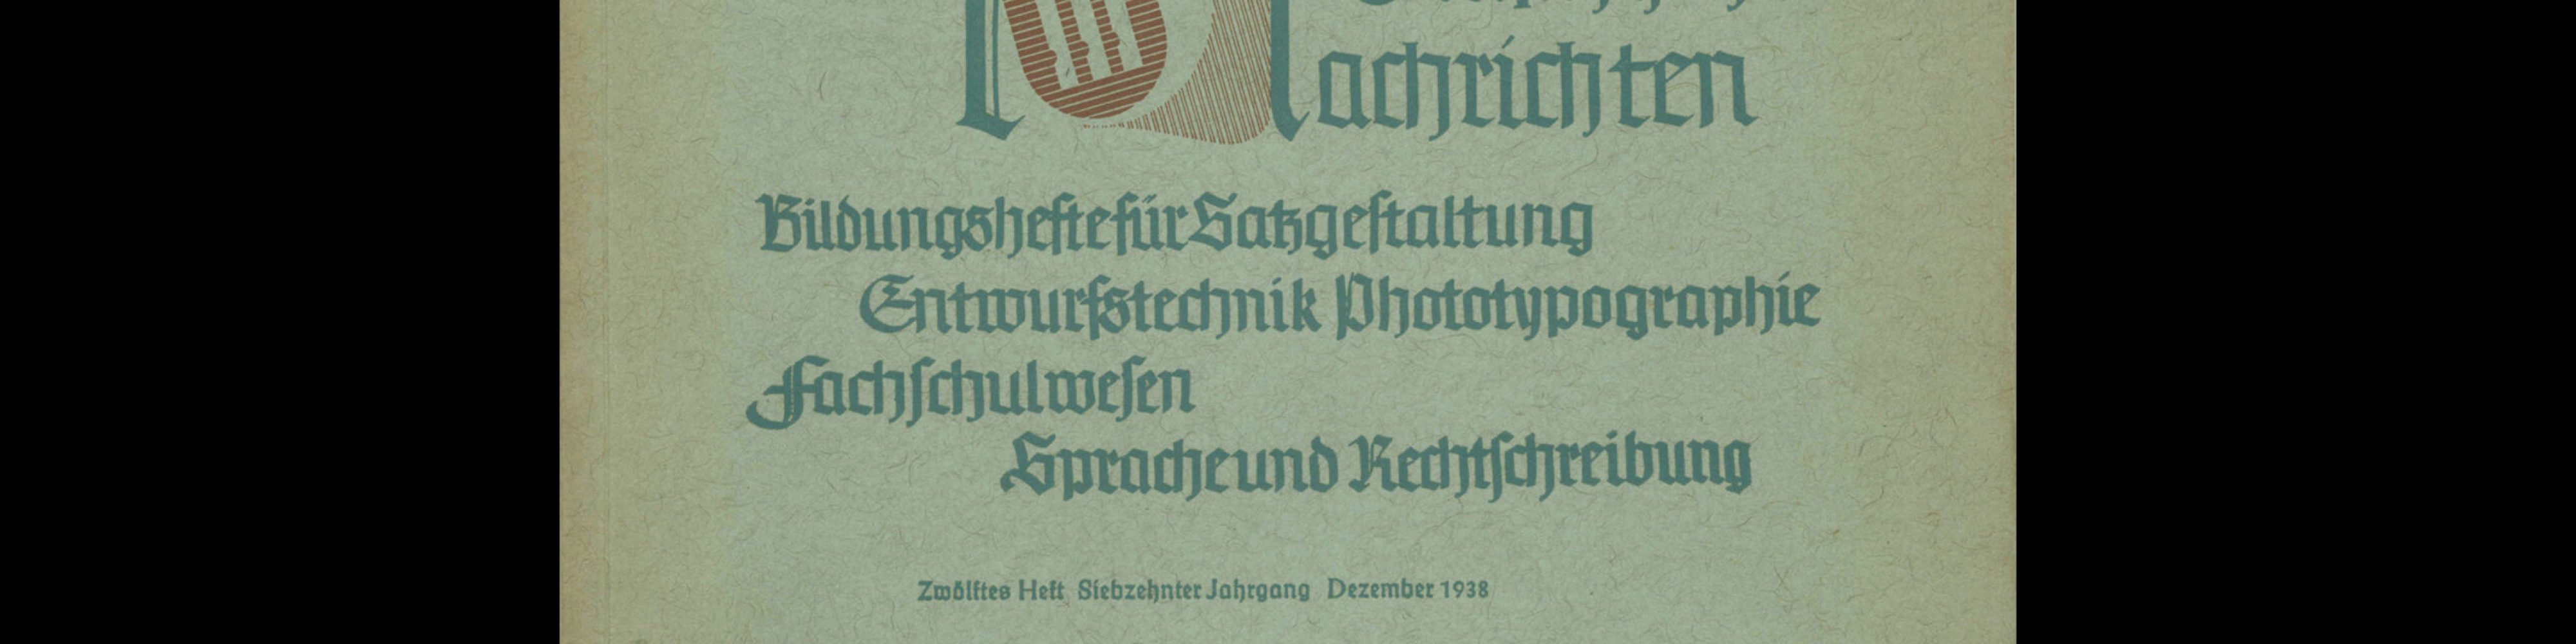 Graphische Nachrichten, Vol 17, December 1938